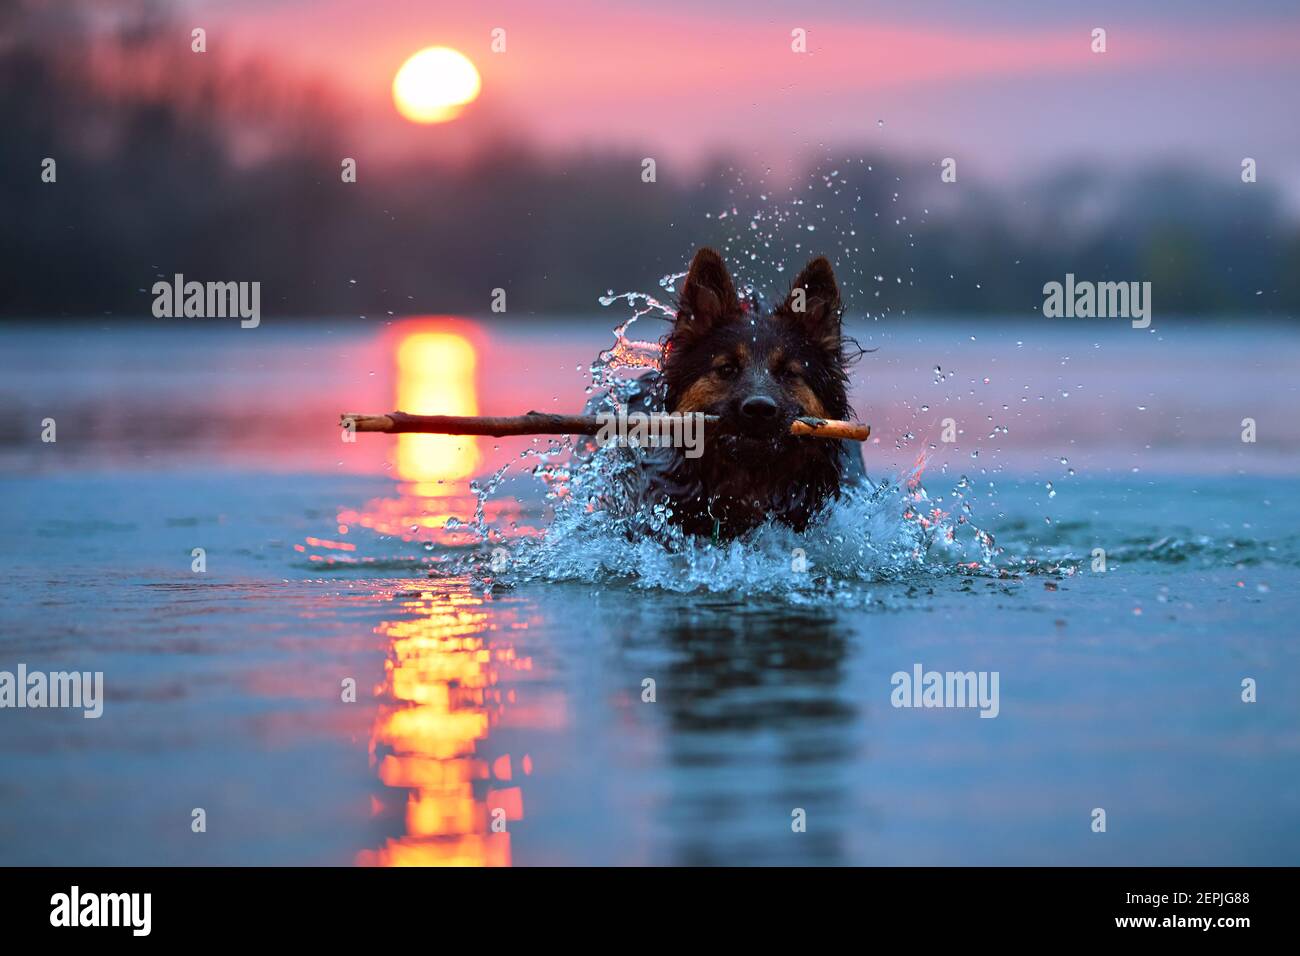 Cane da nuoto contro il tramonto. Vista diretta sul pastore boemo, puro. Cane in acqua, che recupera un bastone. Foto ad angolo ridotto. Foto Stock